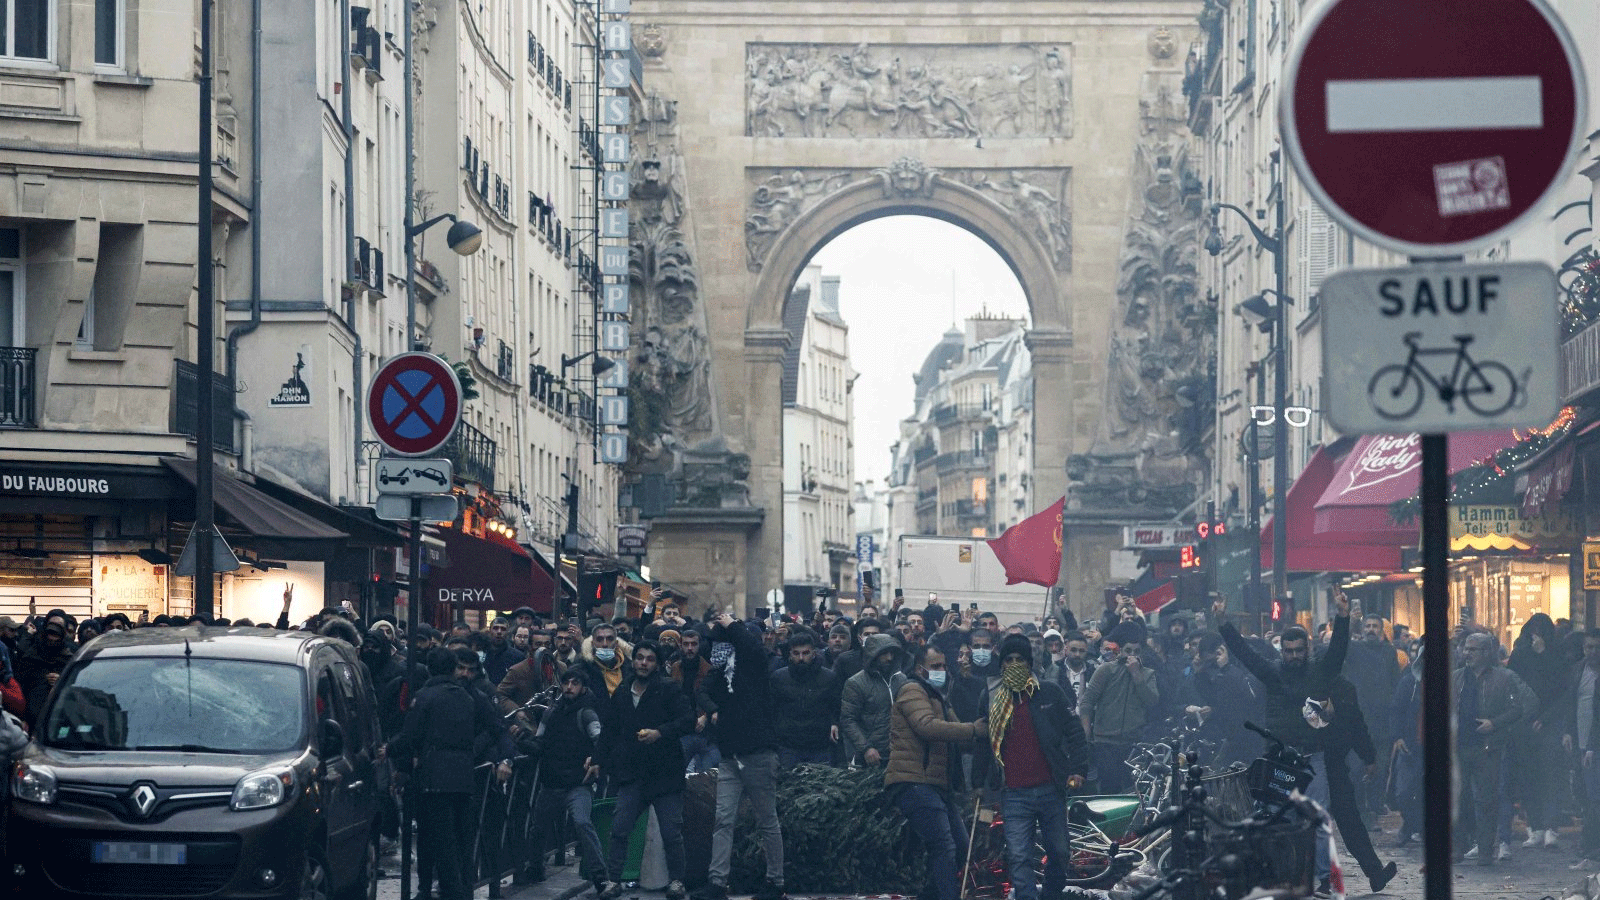 متظاهرون يقفون أمام ضباط شرطة مكافحة الشغب بعد تصريح لوزير الداخلية الفرنسي جيرالد دارمانين (غير مرئي) في الموقع الذي أطلقت فيه عدة طلقات على طول شارع دينجين في الدائرة العاشرة، في باريس في 23 ديسمبر(كانون الأول) 2022